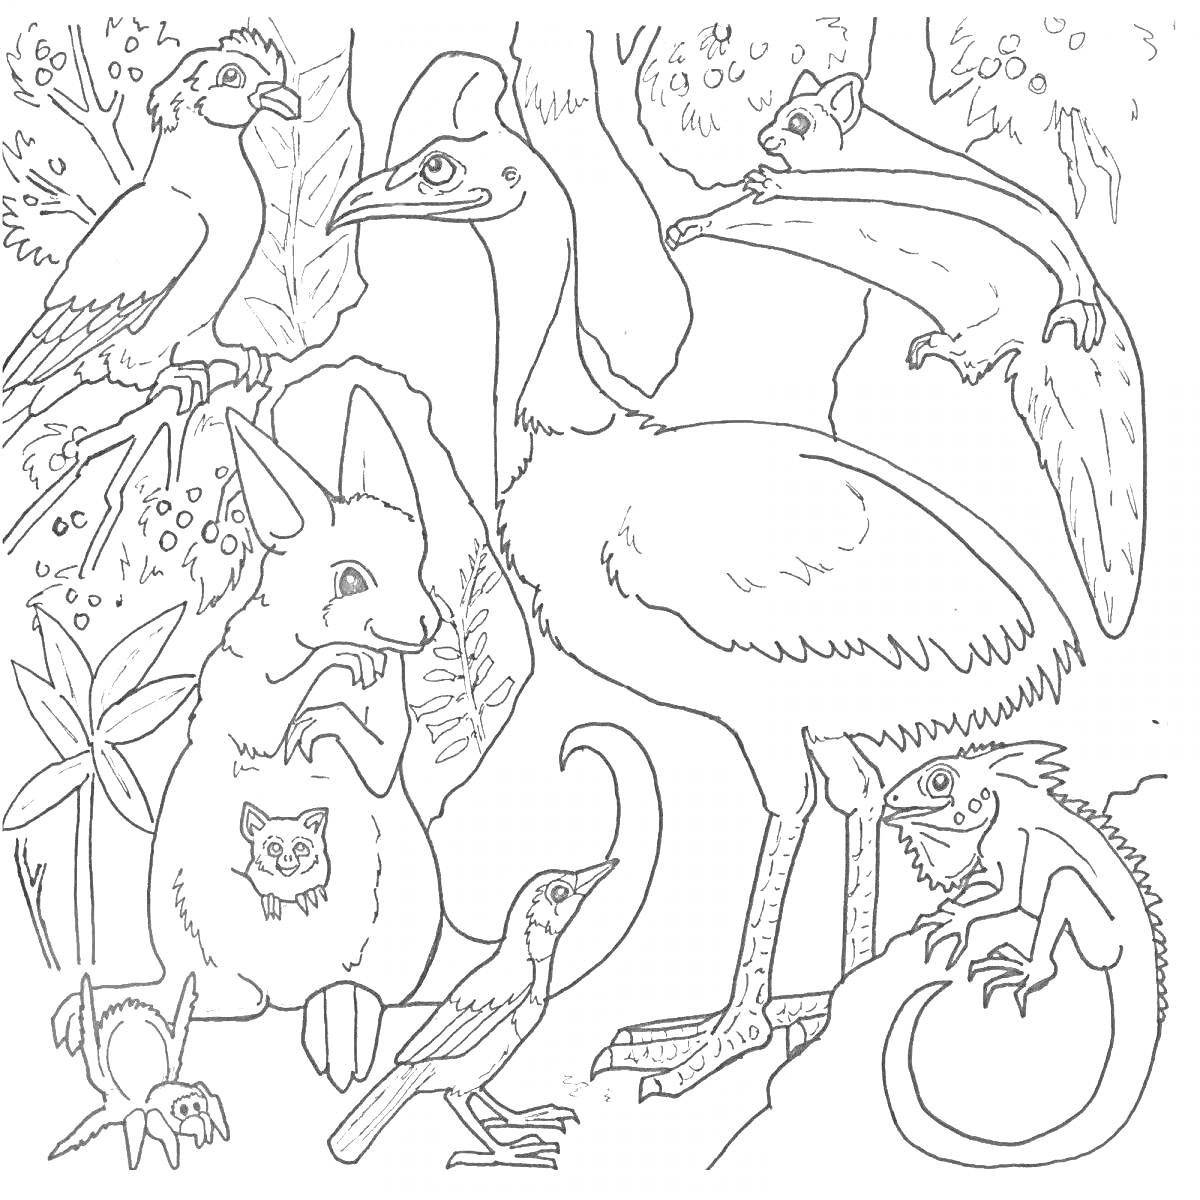 Раскраска Большие и малые животные леса: птицы, кенгуру с детёнышем, сумчатая летяга, варан